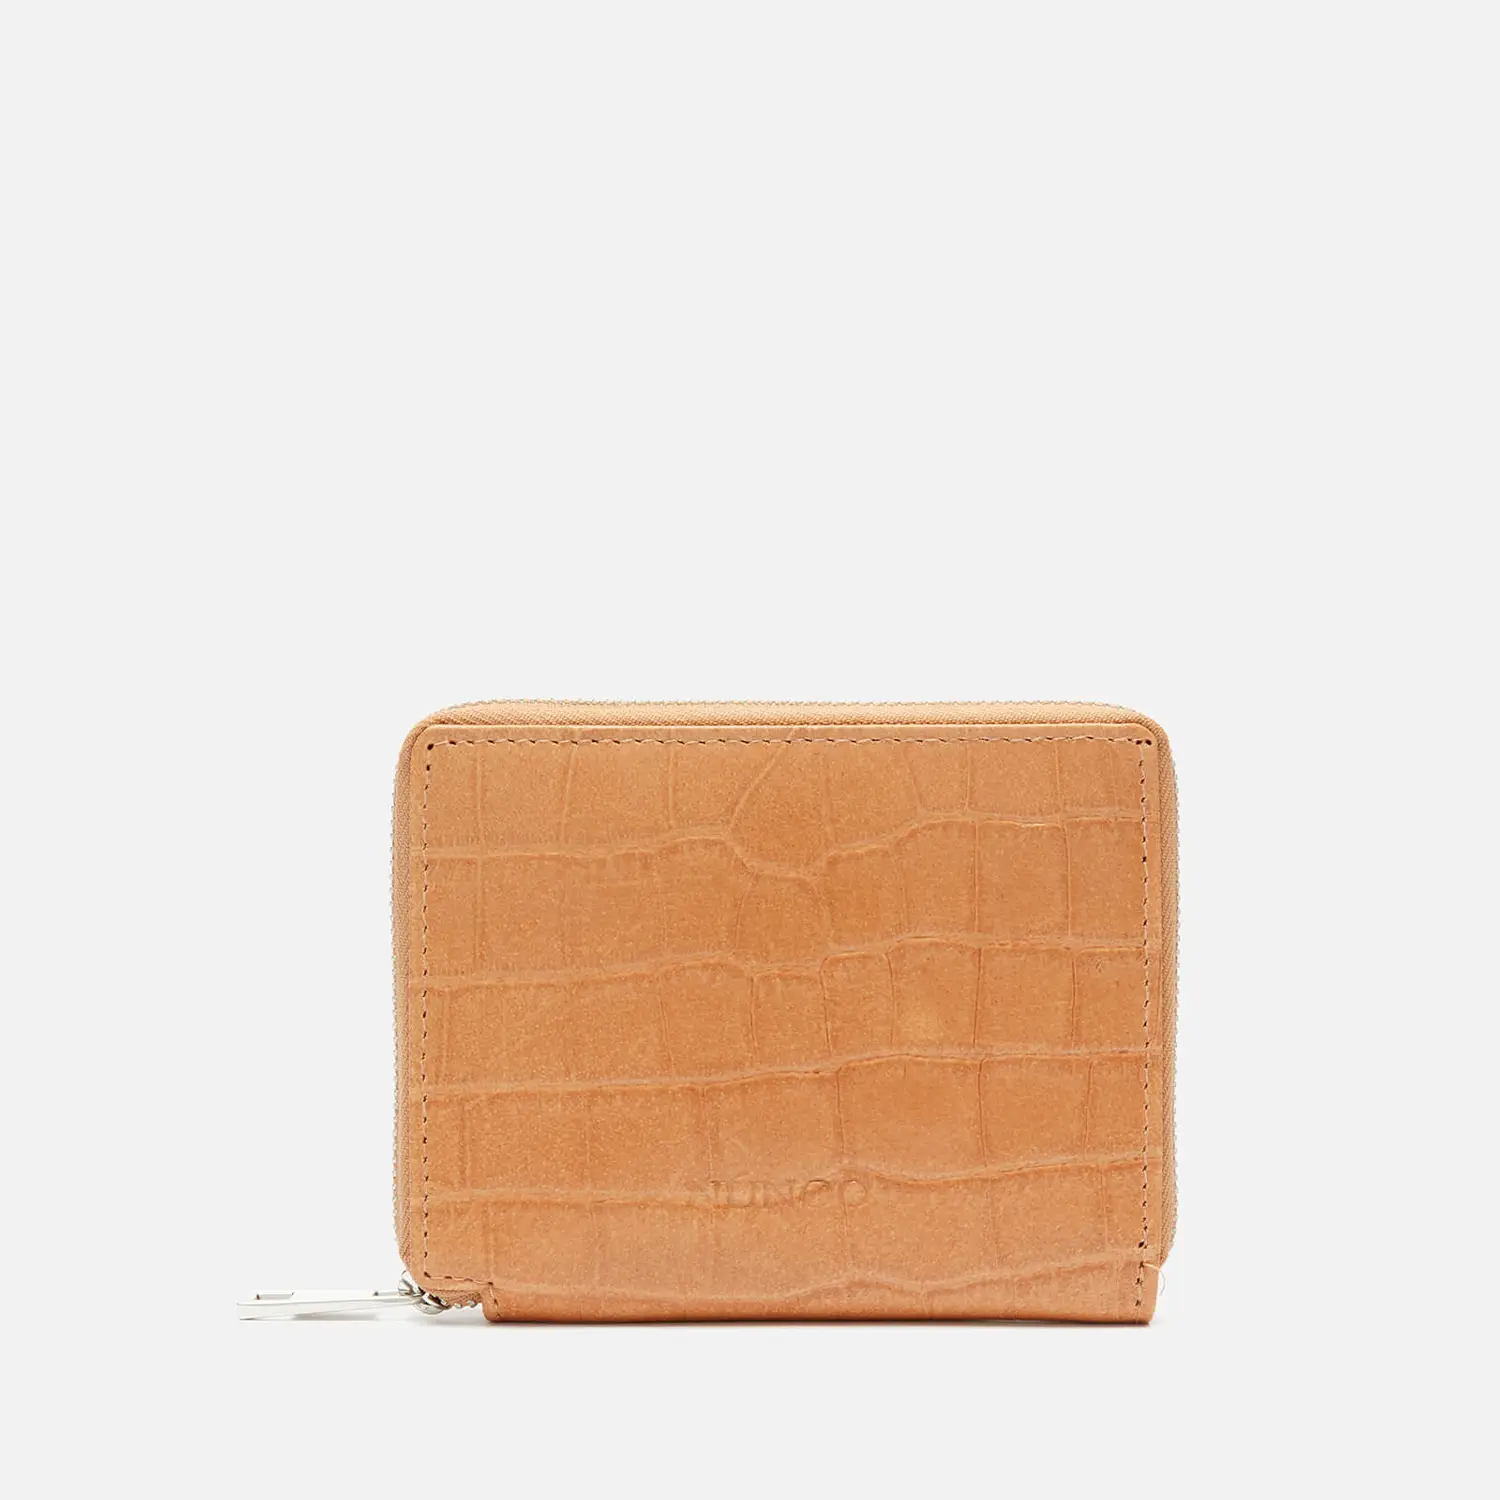 Nunoo Beige Leather Wallet